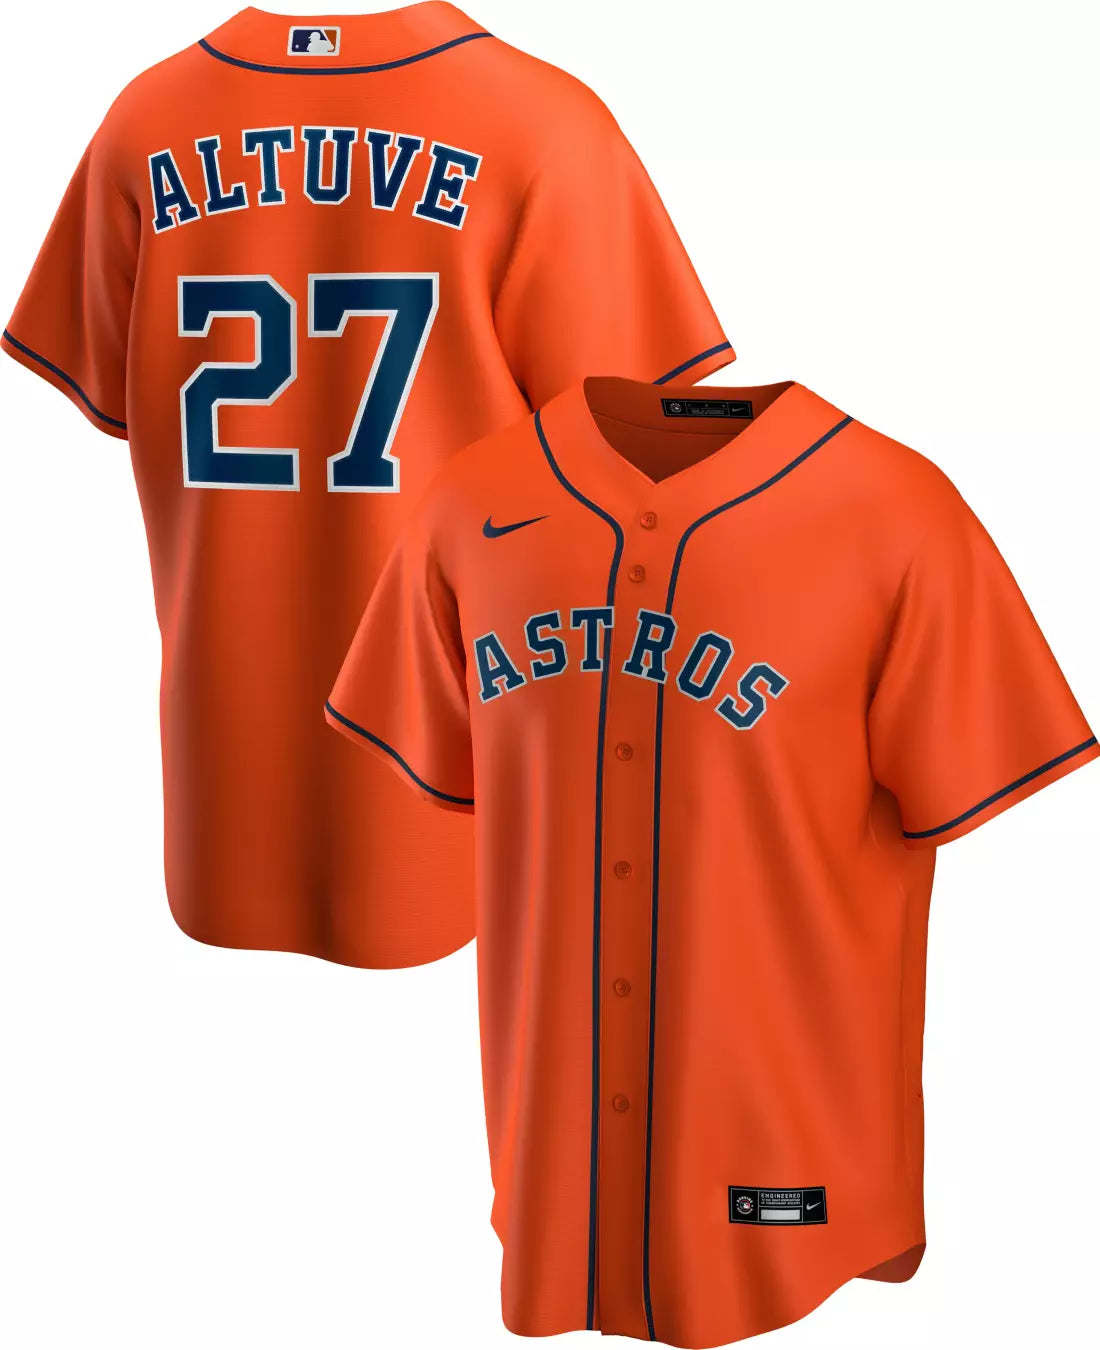 Jose Altuve Houston Astros Jersey